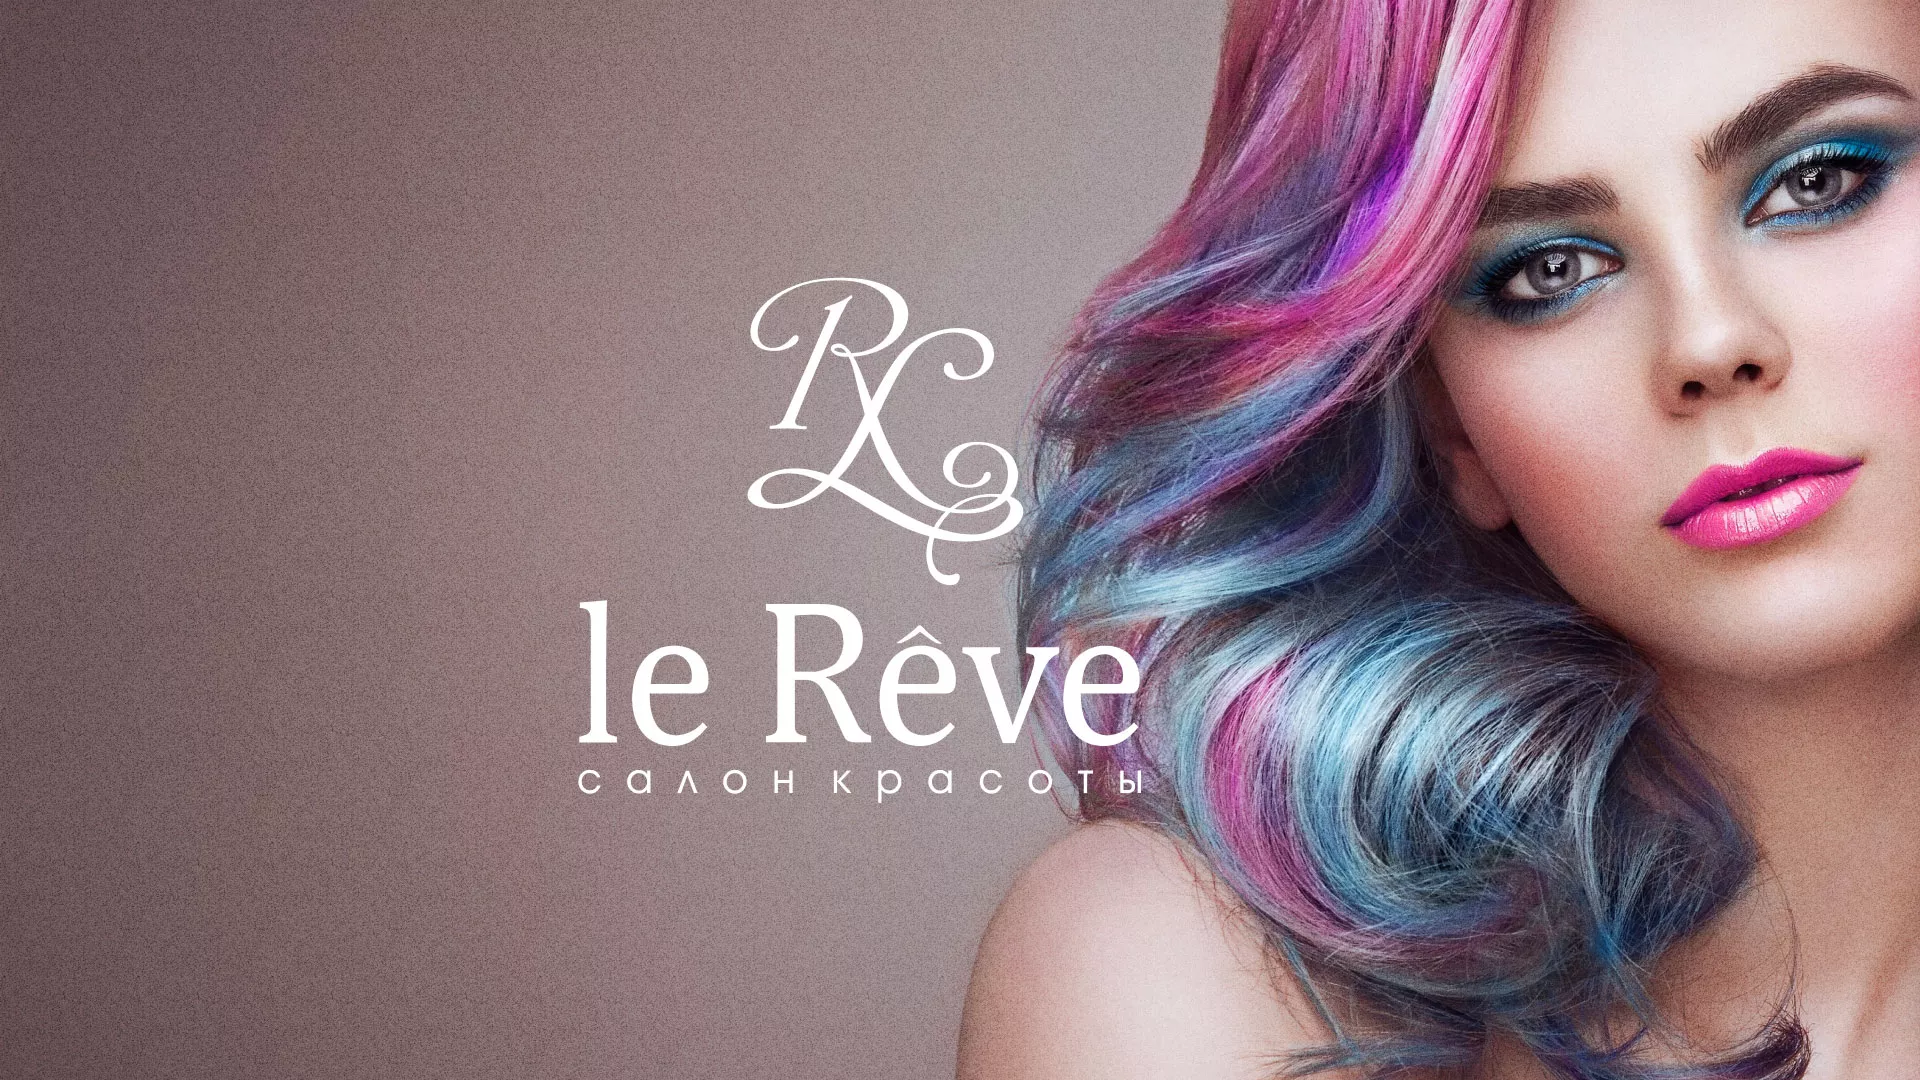 Создание сайта для салона красоты «Le Reve» в Харабалях